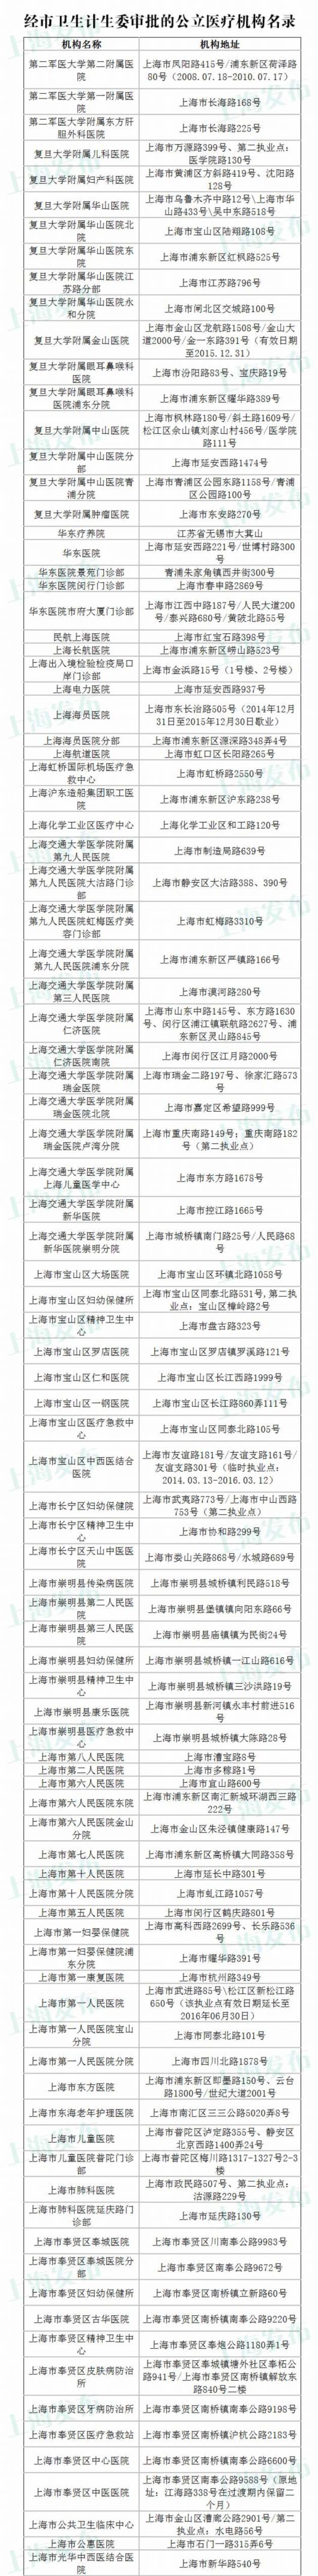 上海卫计委公布公立医疗机构最新名录 共271所